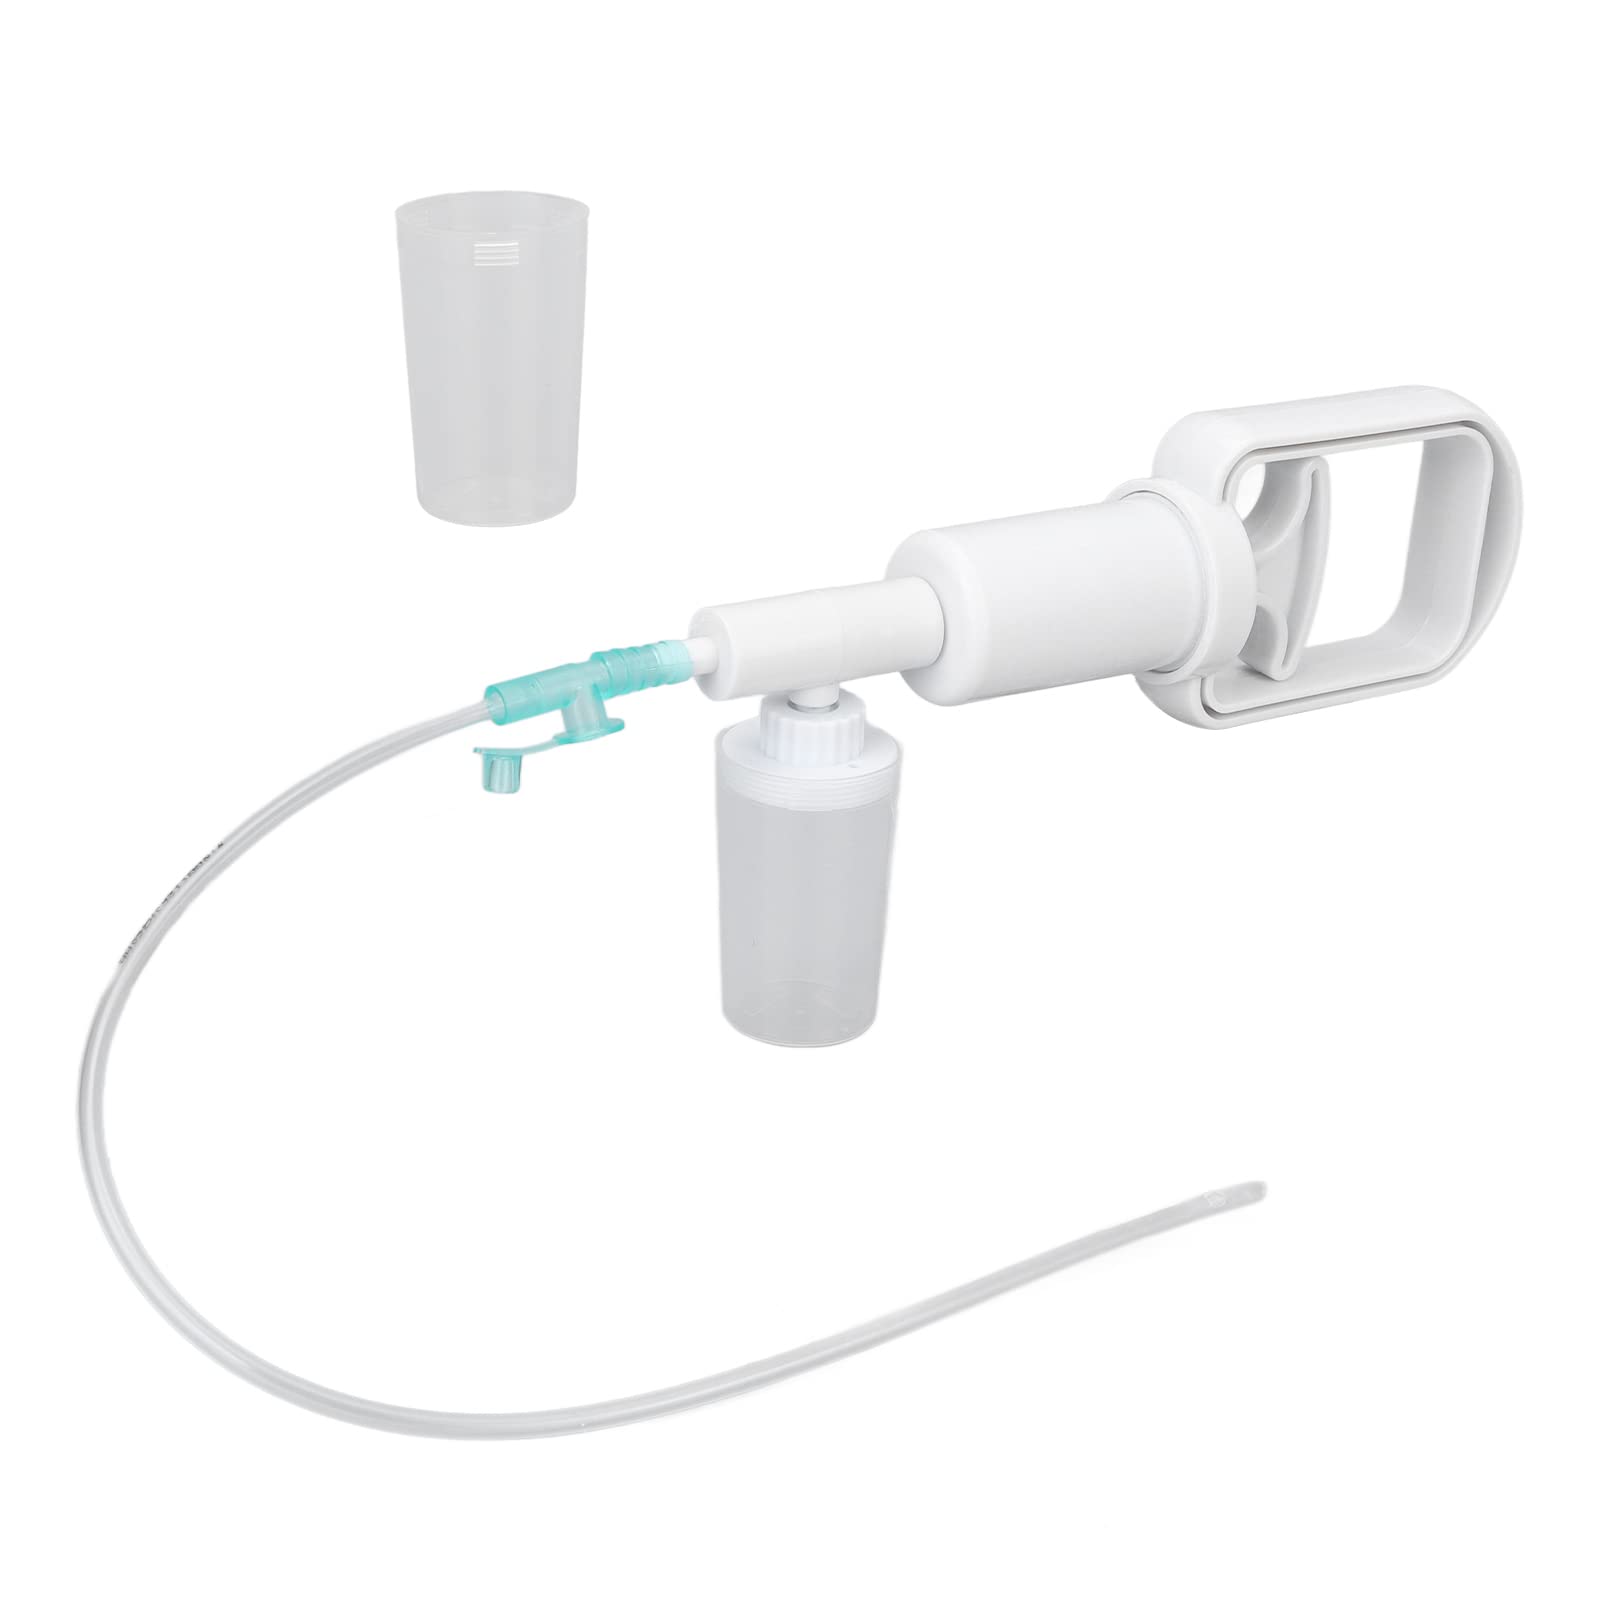 Tragbare Sputum-Absaugpumpe Bequeme Verwendung Professionelle Hand-Sputum-Absaugpumpe für die häusliche Pflege: